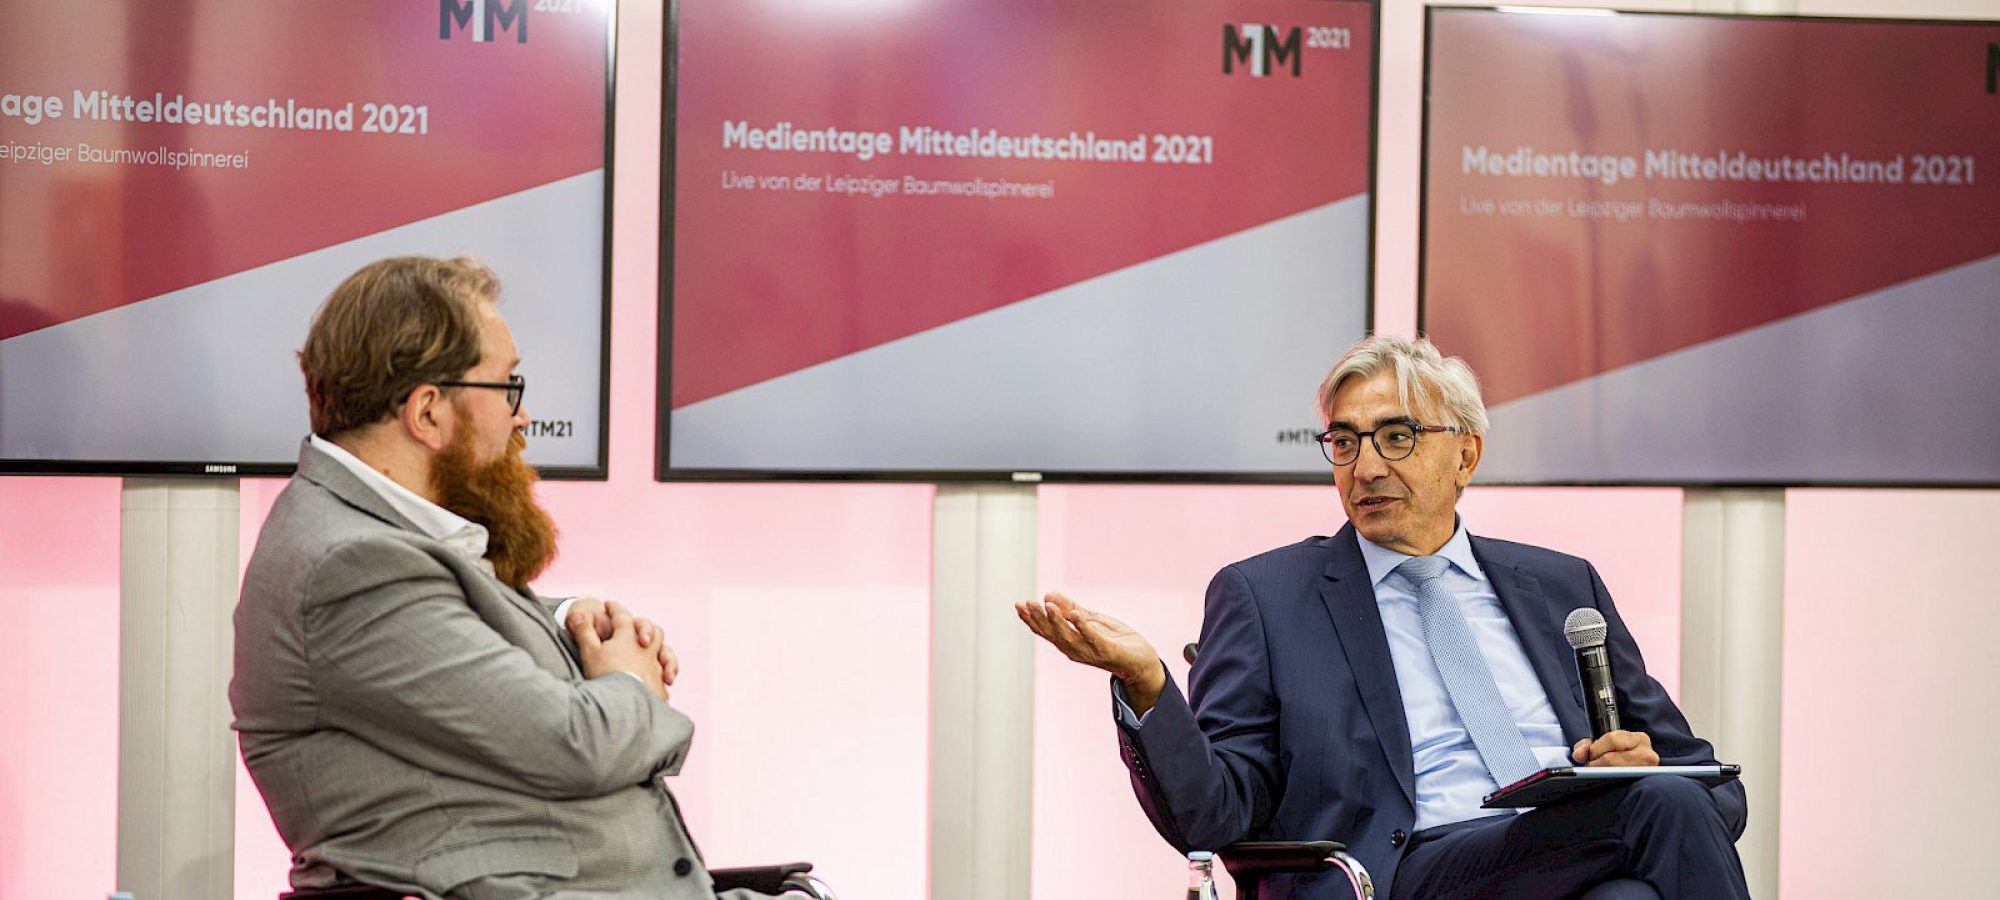 Medientage Mitteldeutschland 2022 (JPG)